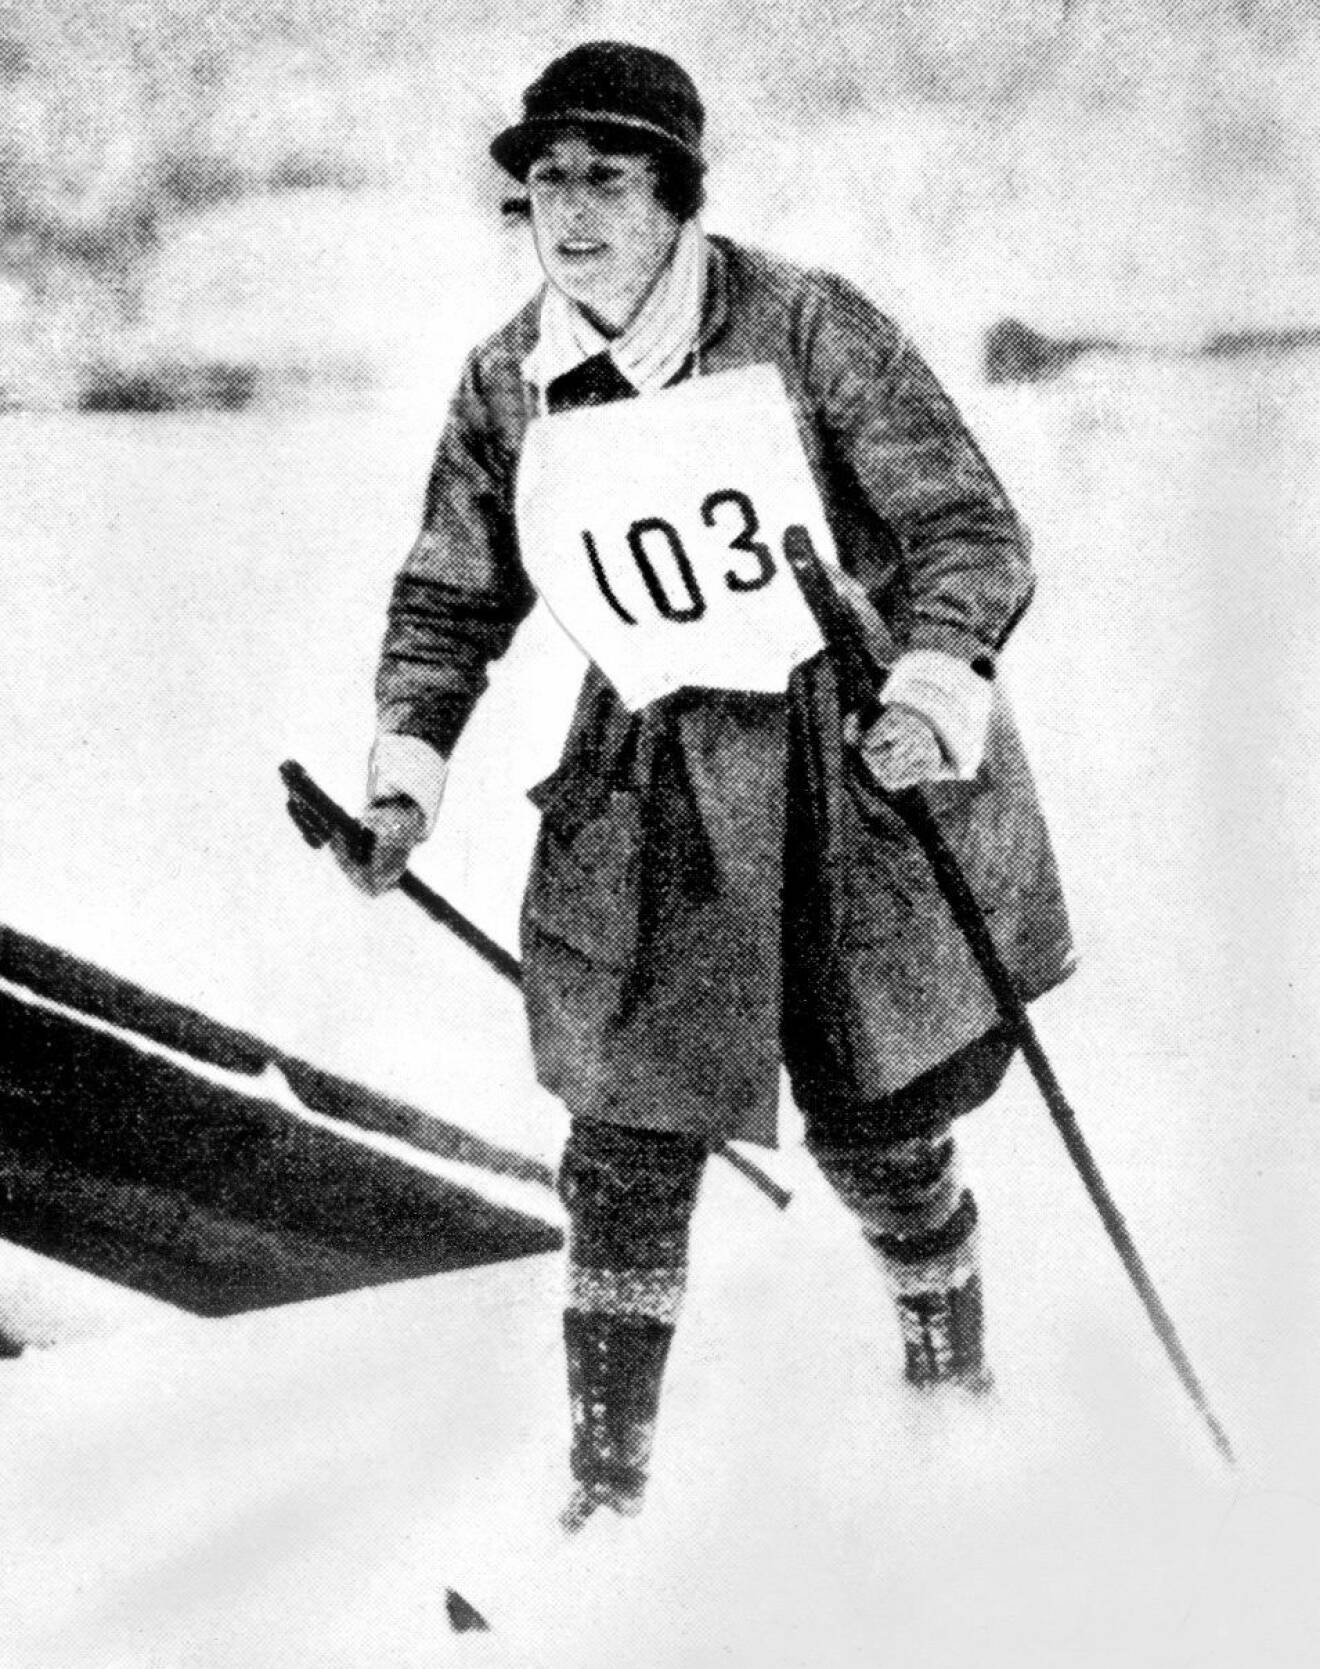 Margit Nordin skidade som första kvinna i Vasaloppet.